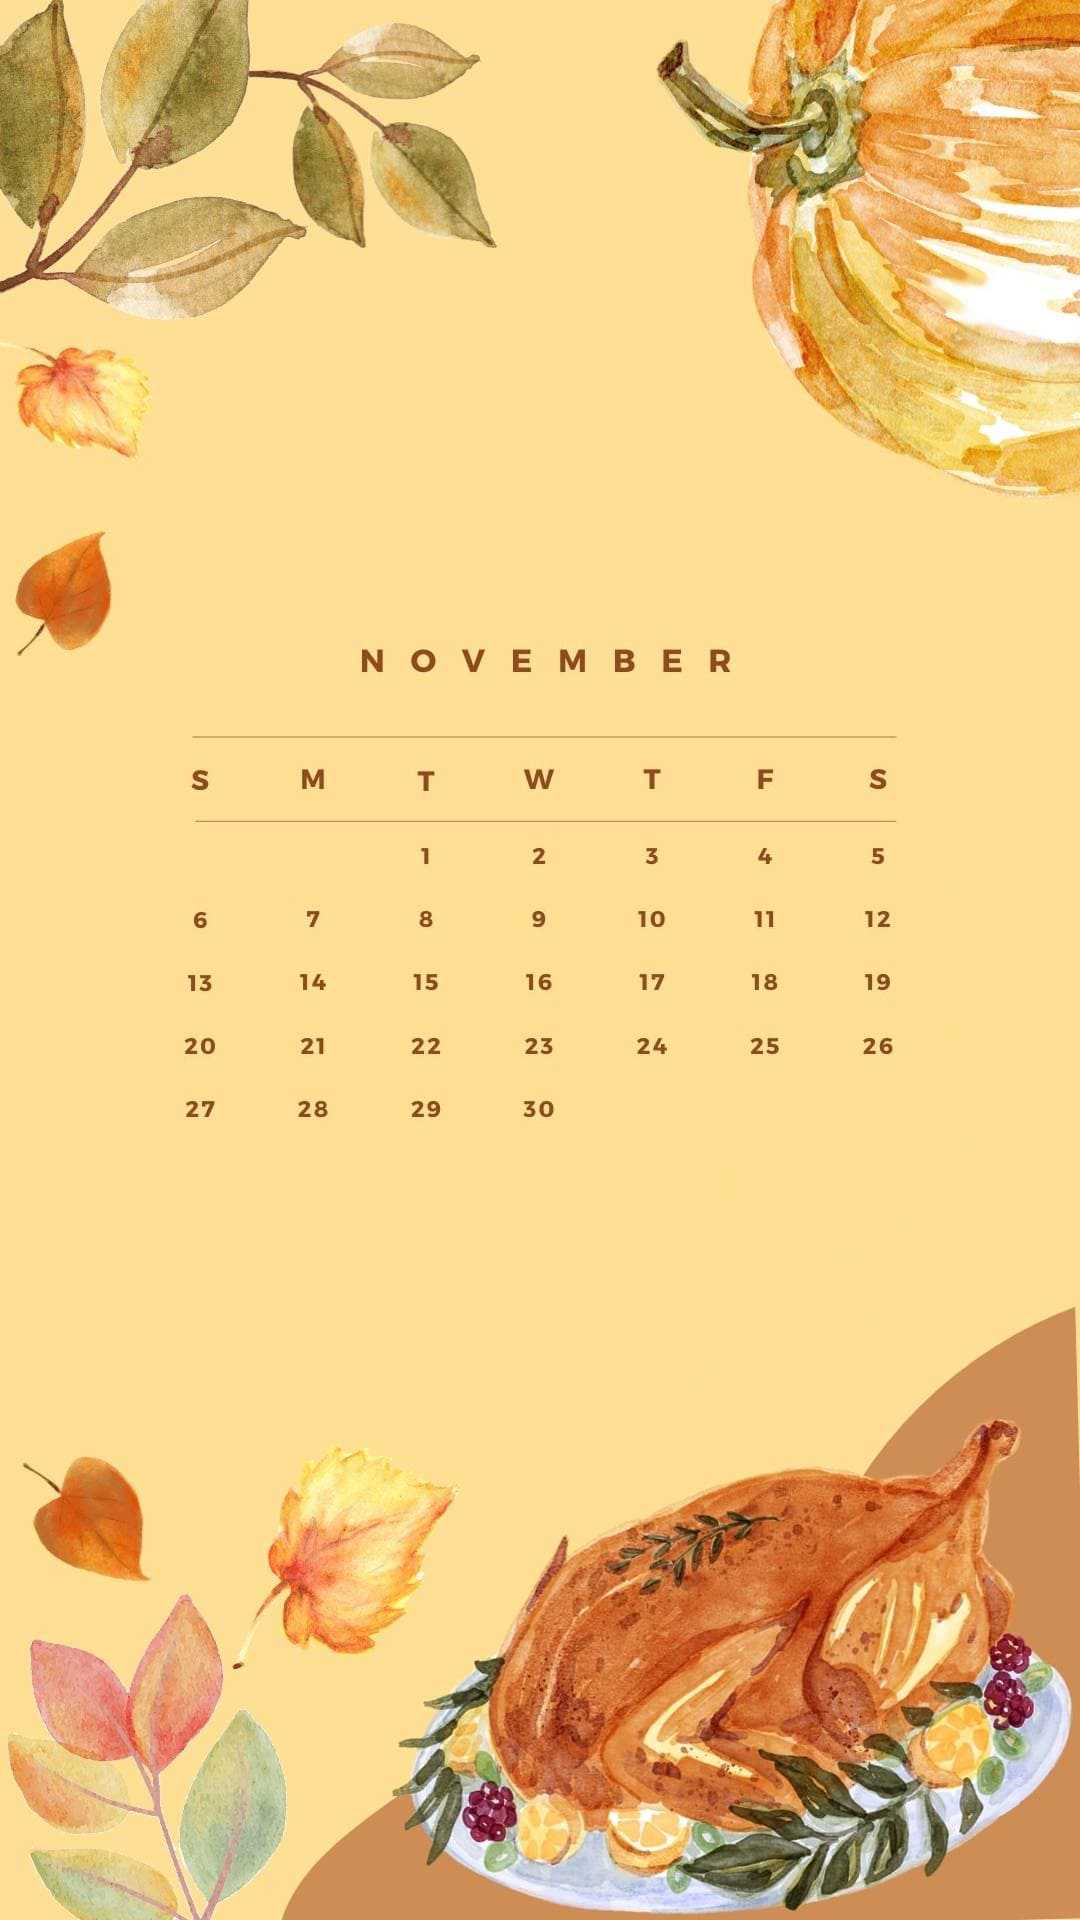 2022 November Calendar Wallpaper - iXpap